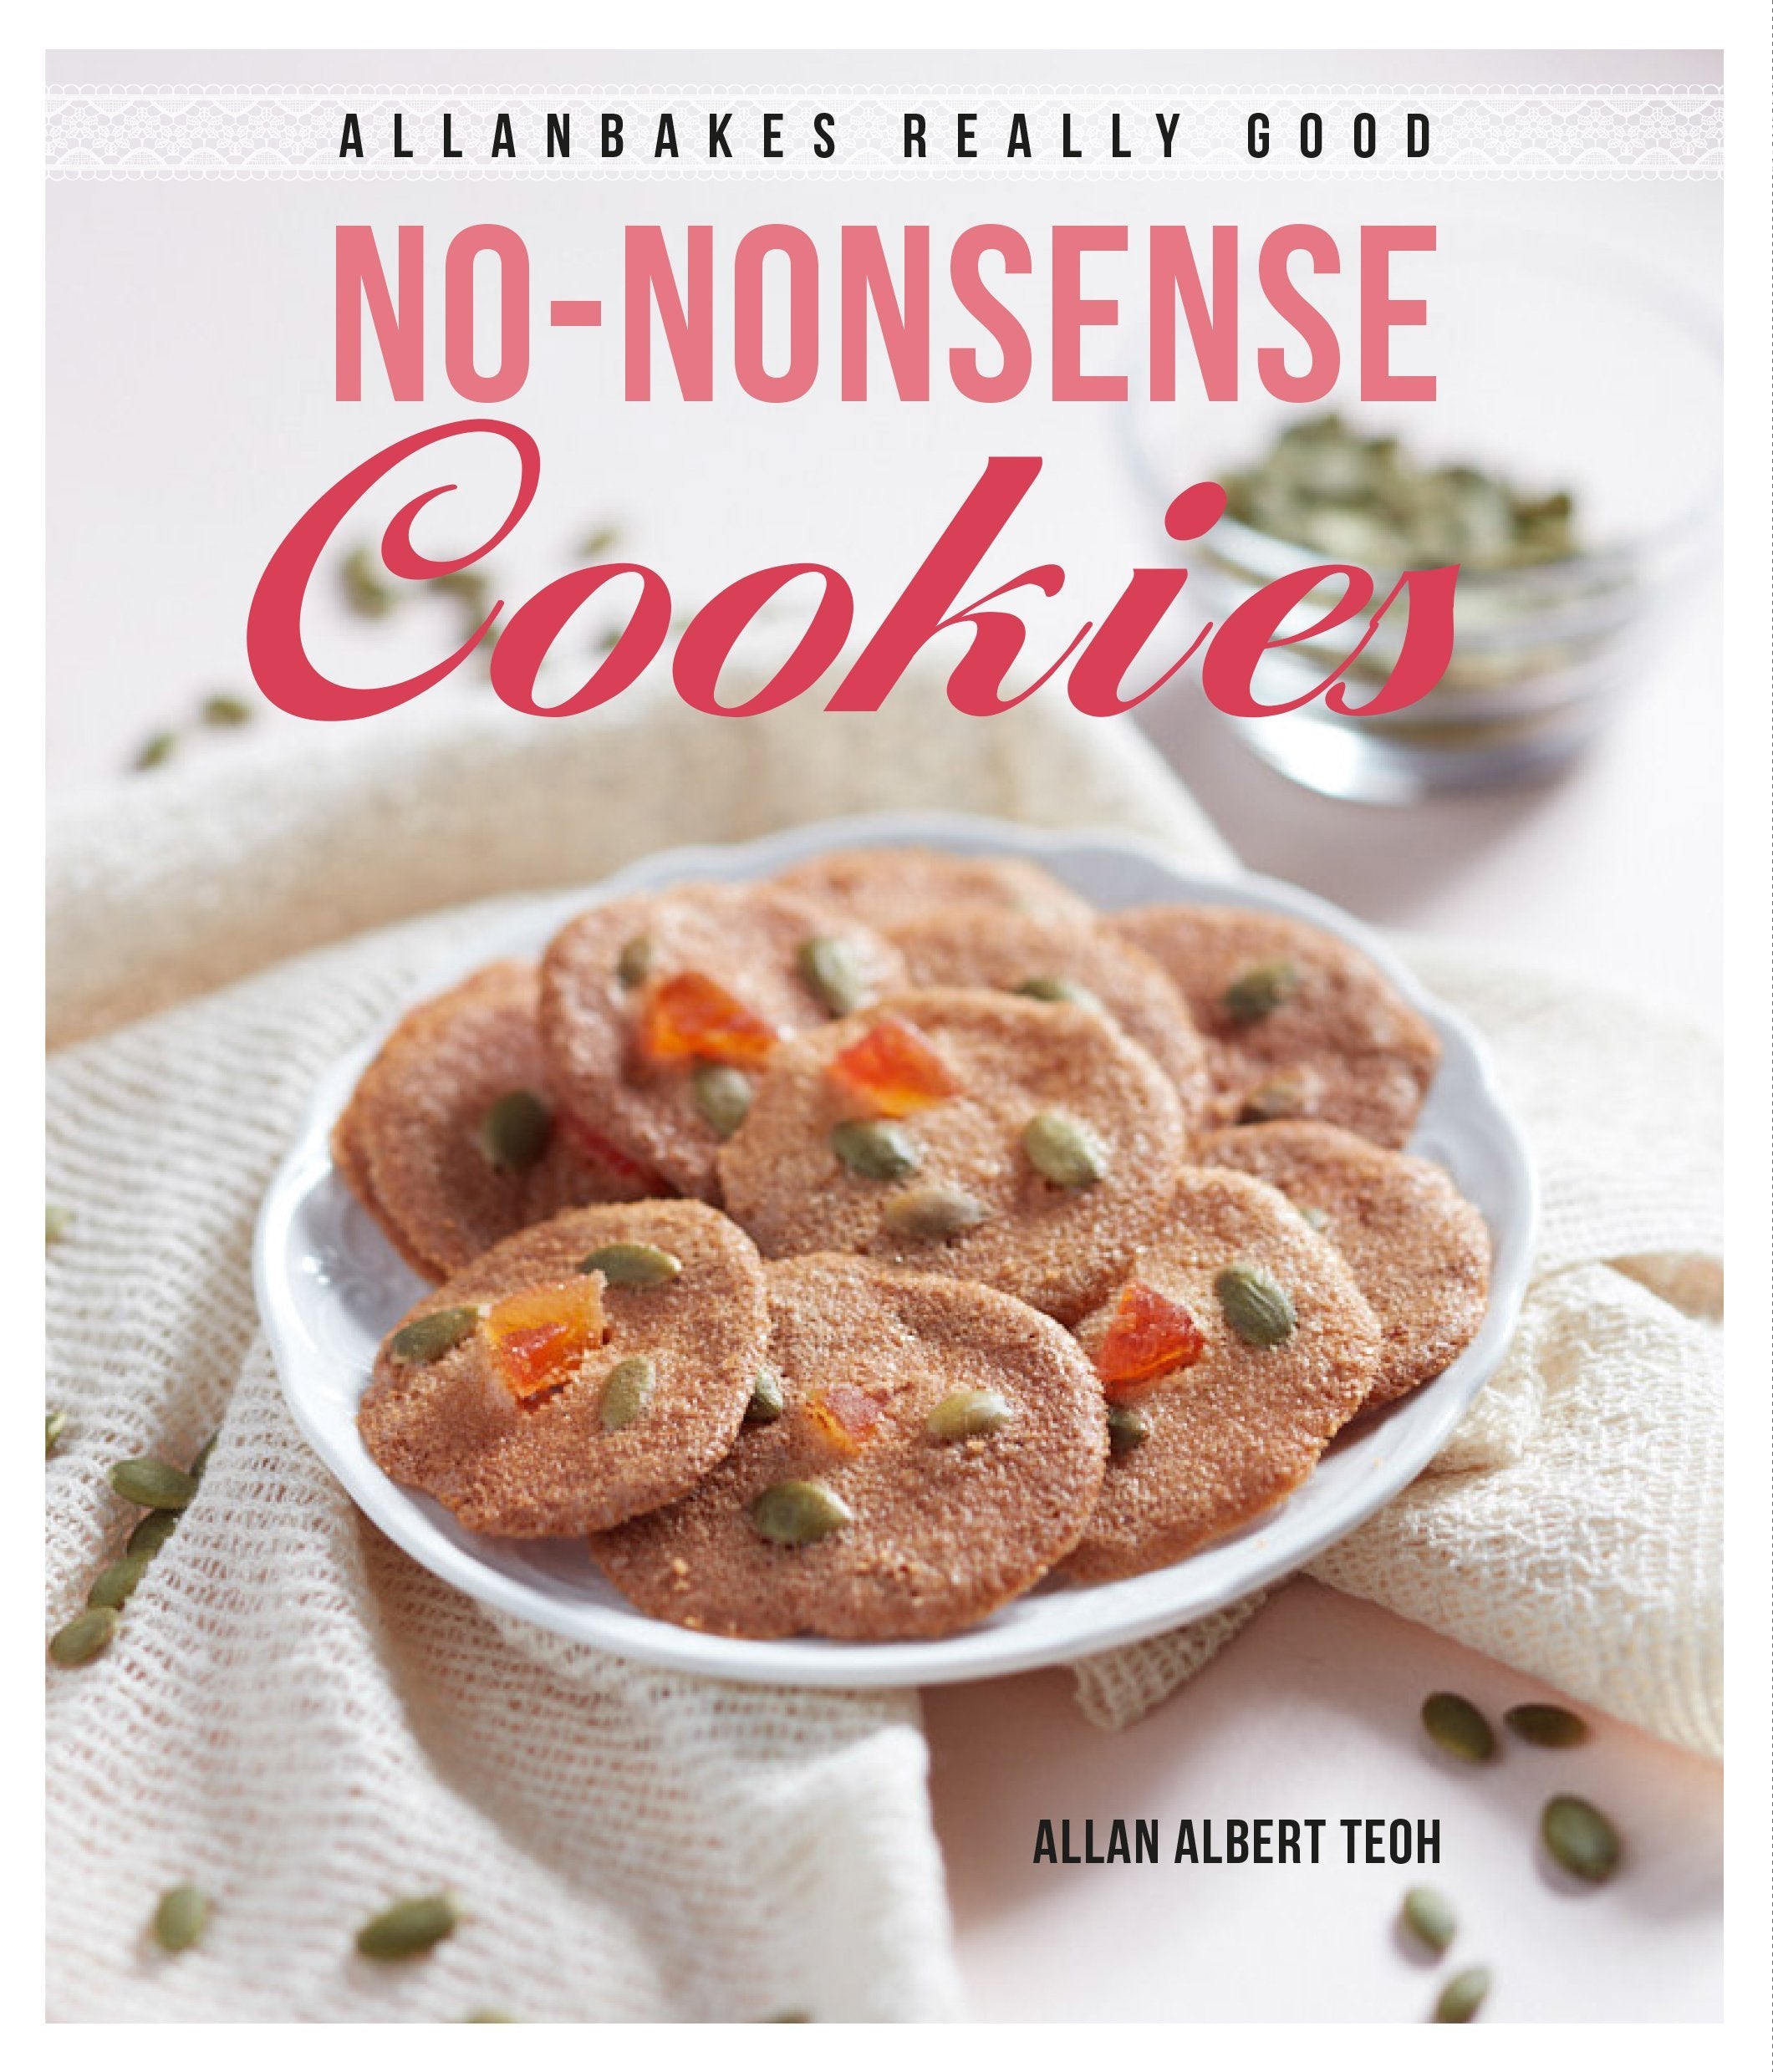 Allanbakes: Really Good No-Nonsense Cookies